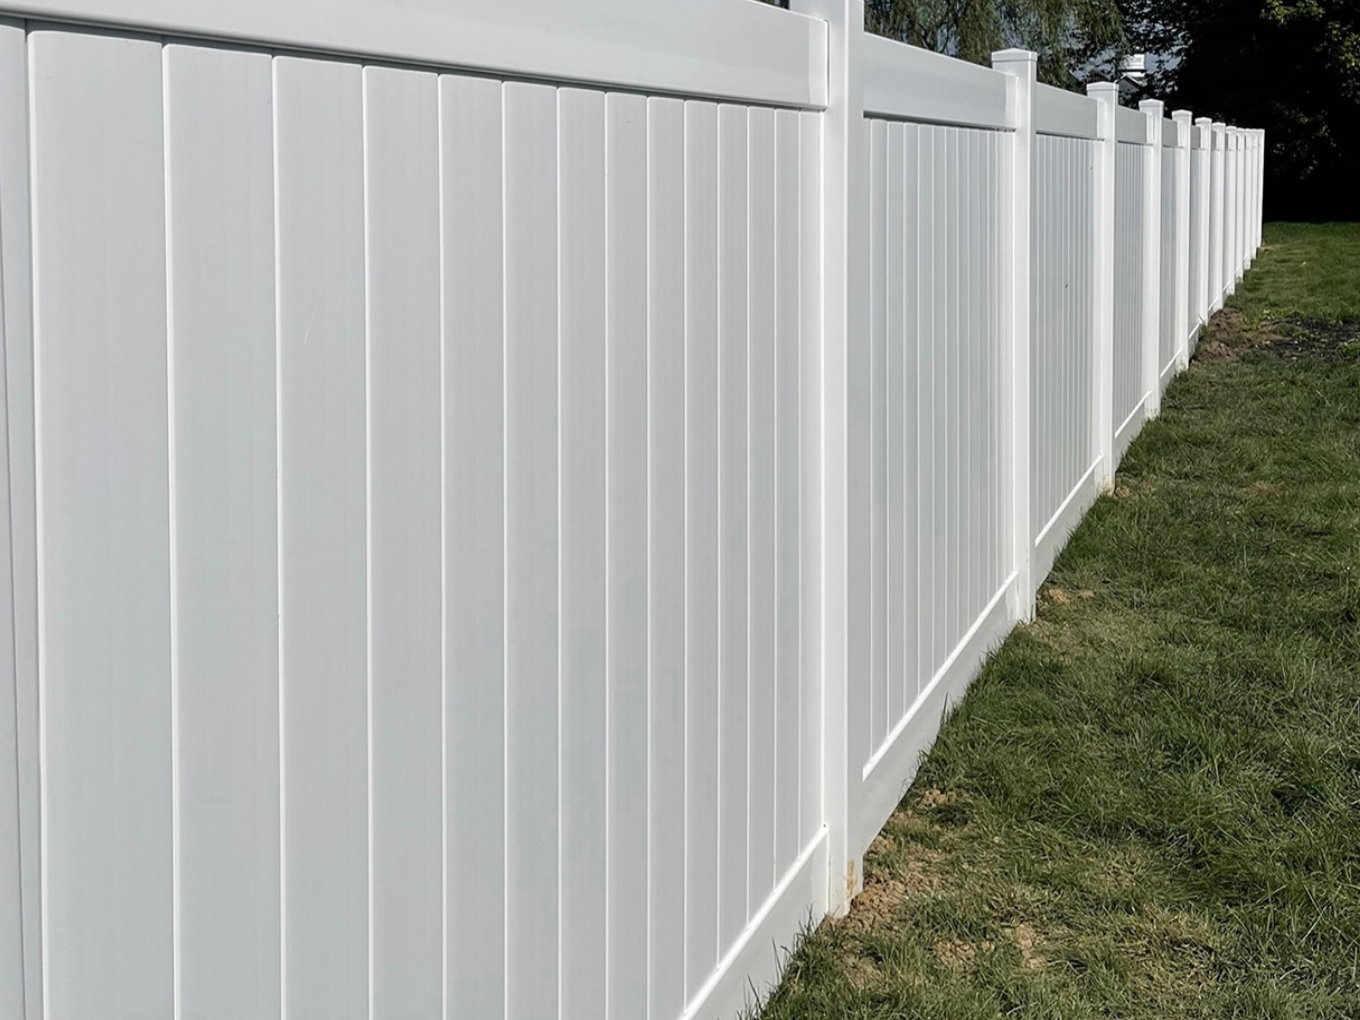 Avon Indiana vinyl privacy fencing